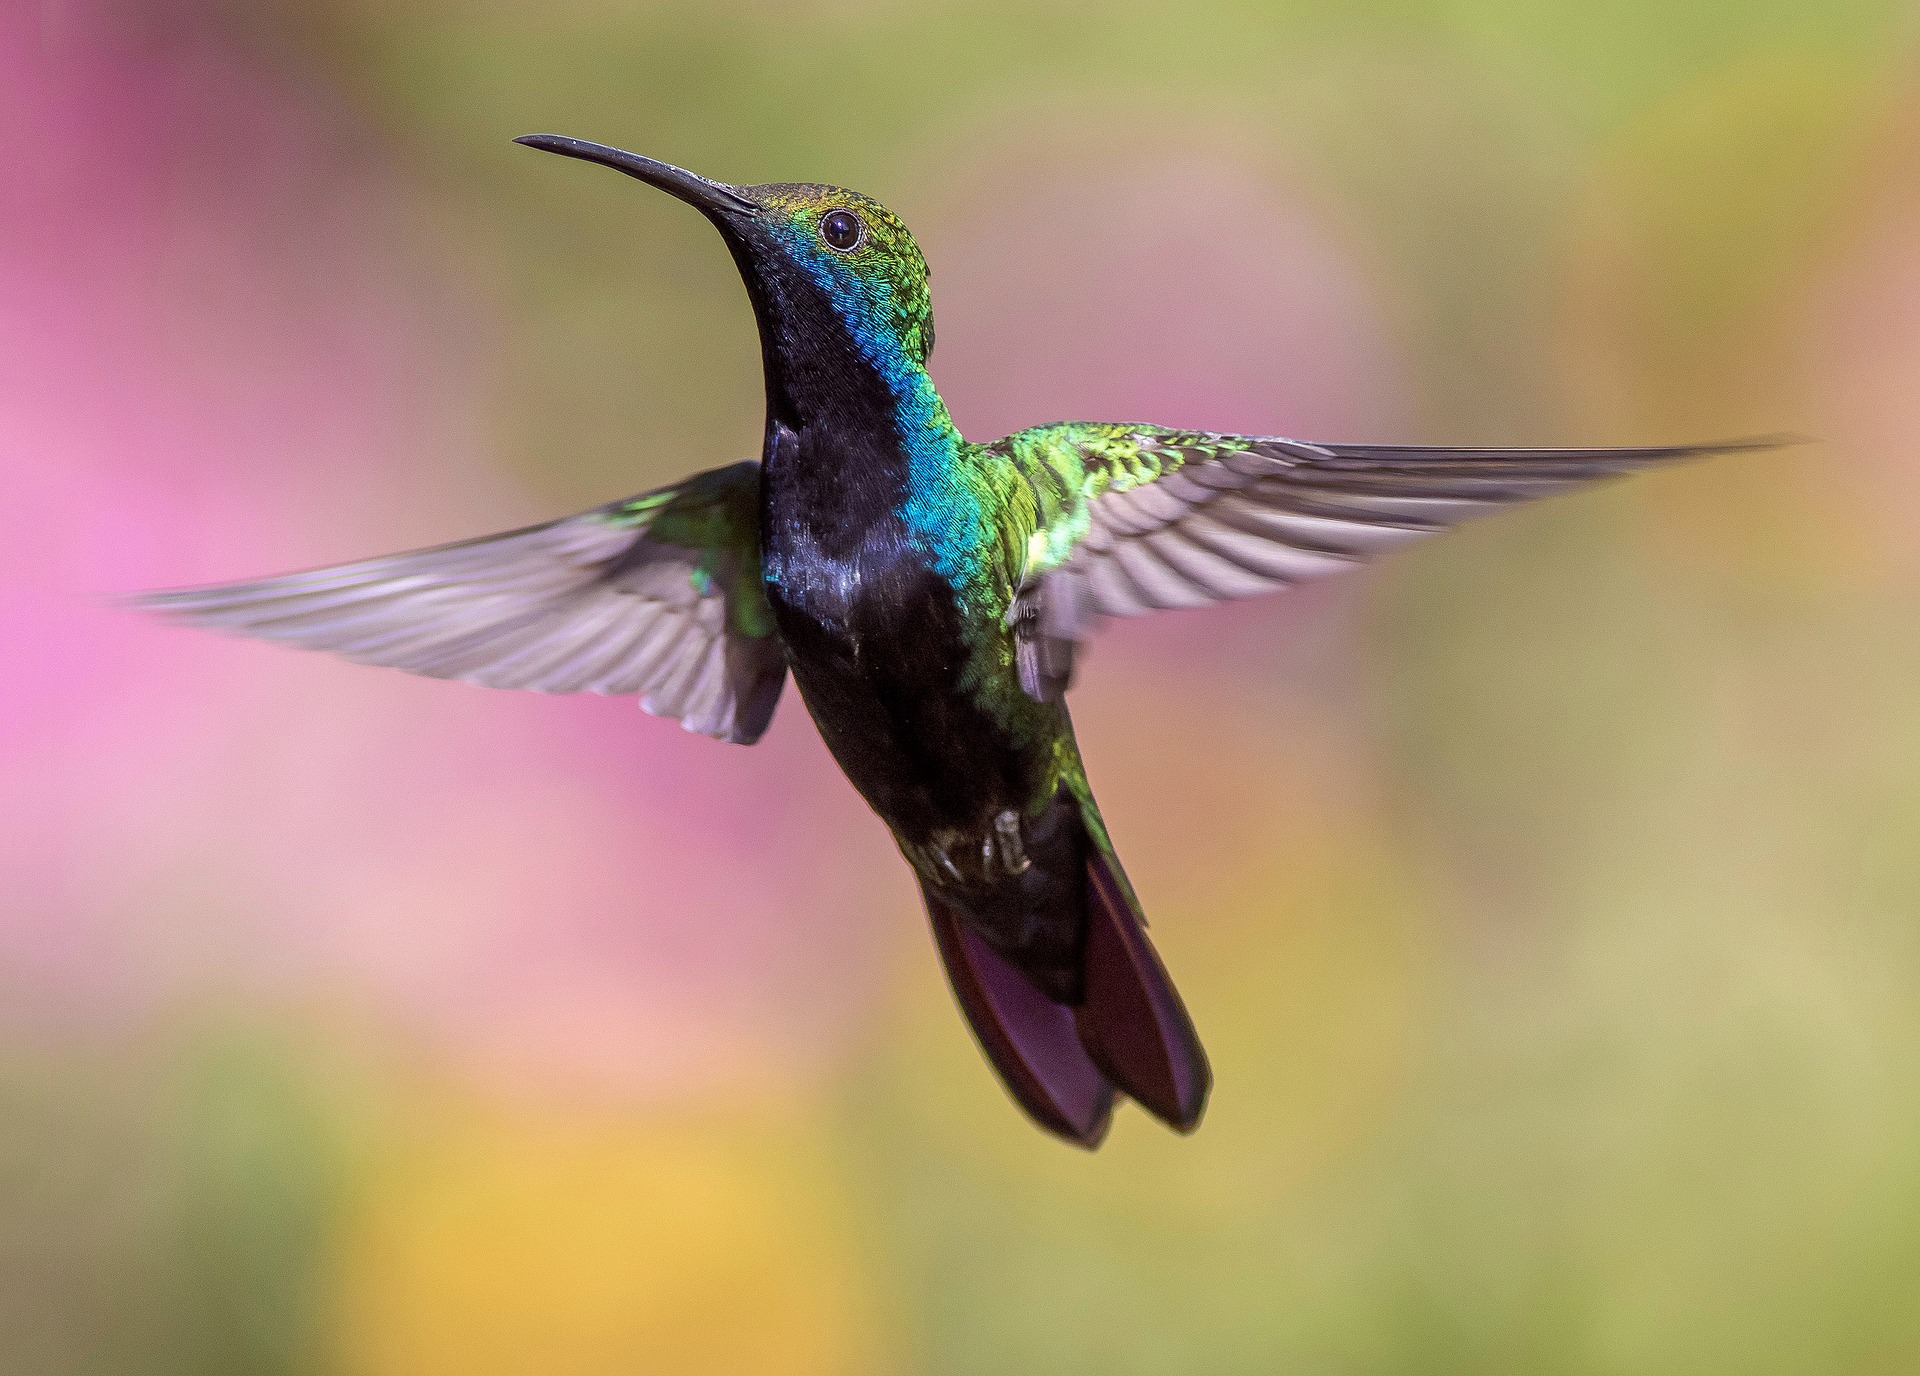 Wees als de kolibrie: blus de brand